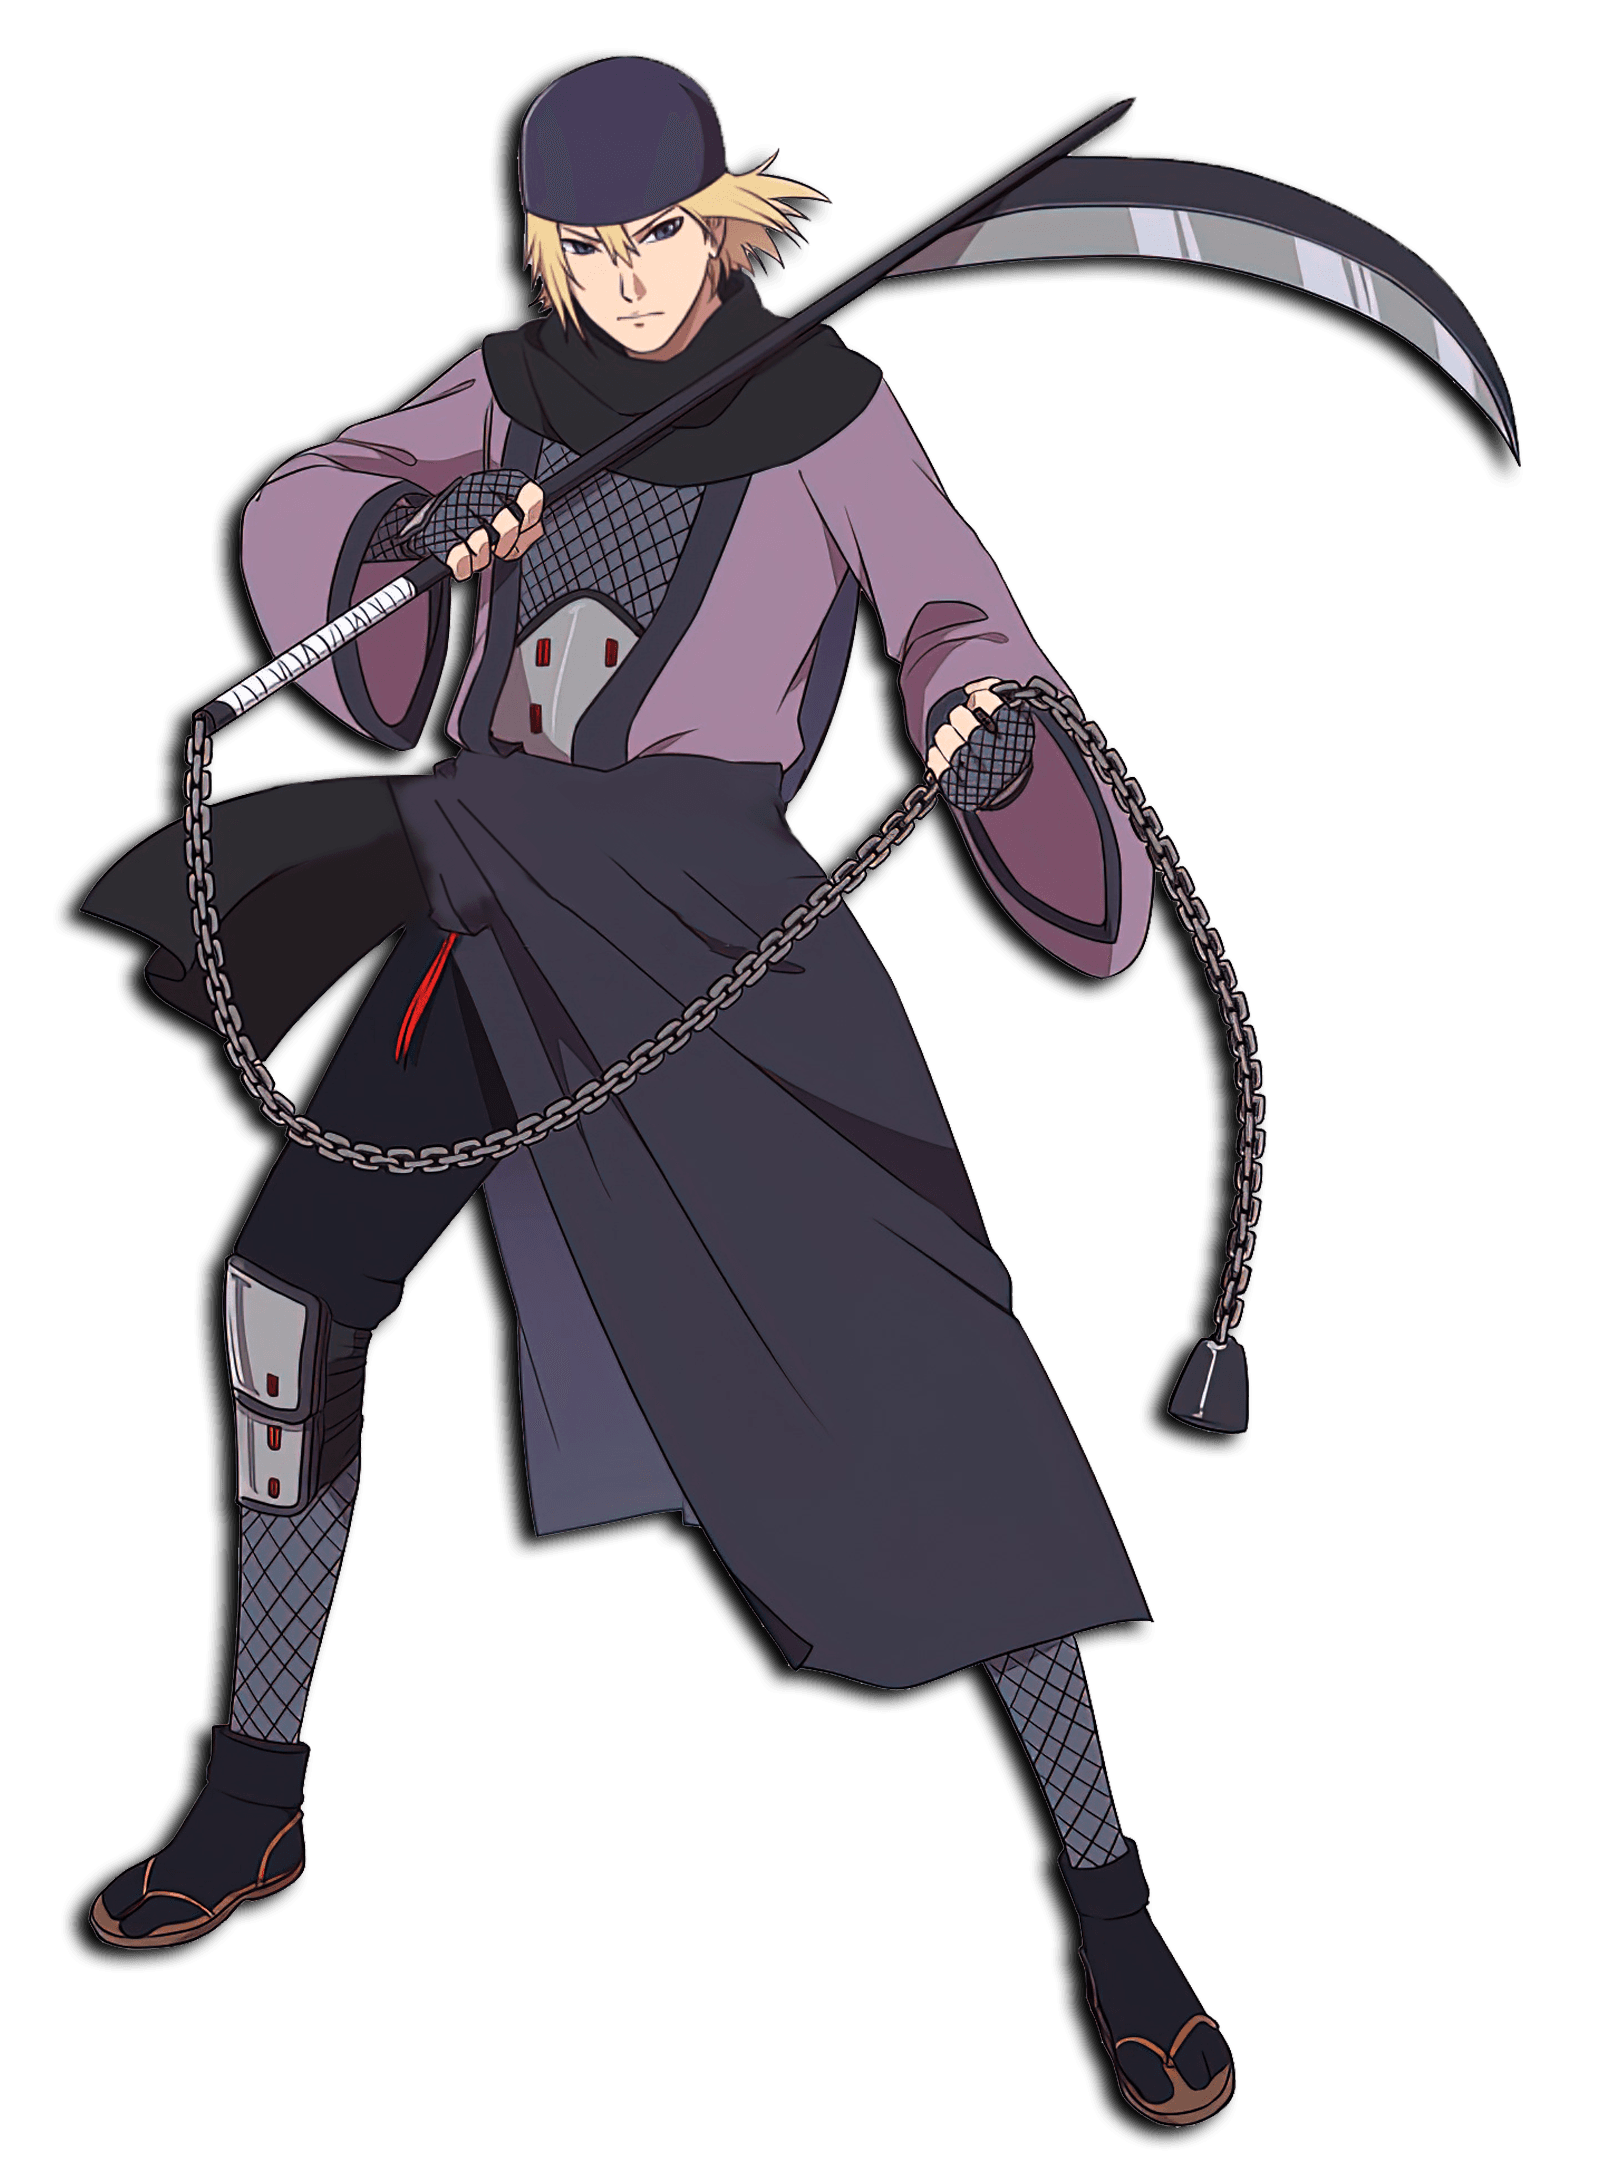 ninja holding a scythe